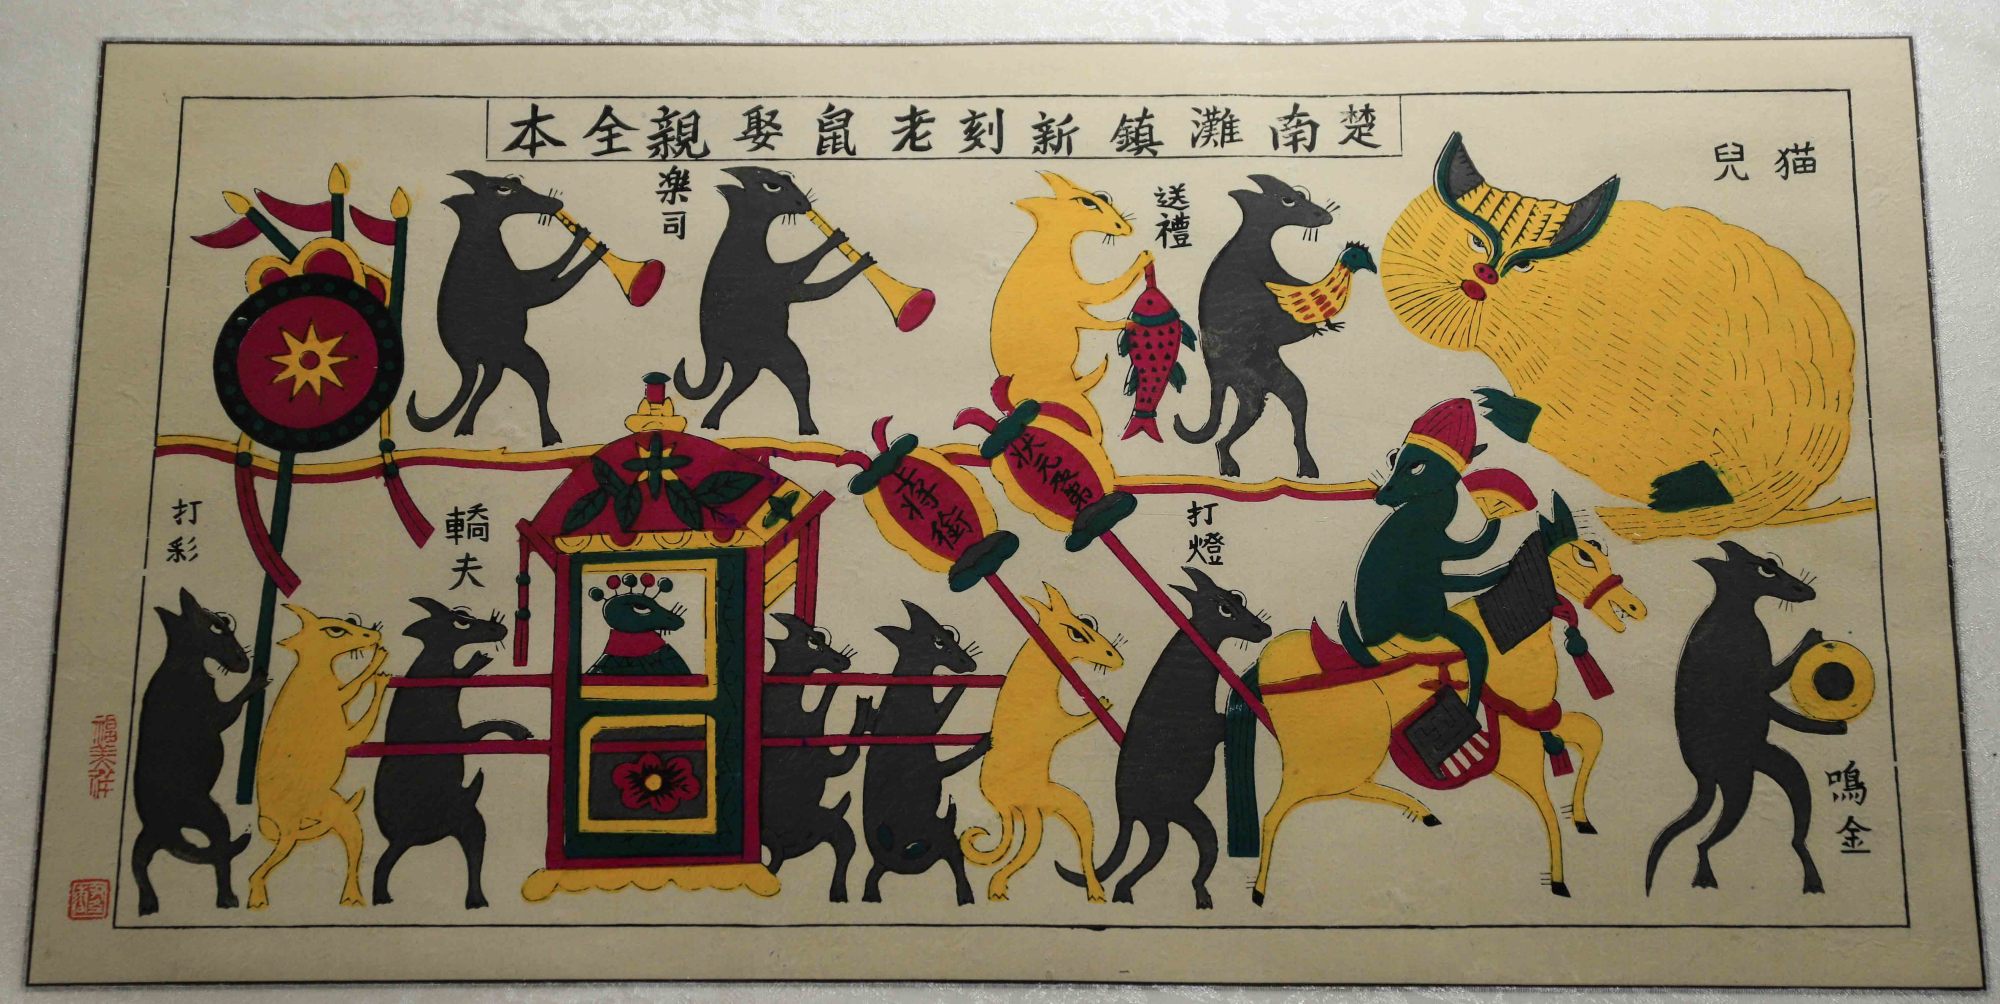 湖南滩头年画:300年民俗瑰宝,20道复杂工艺,多个国家追捧收藏